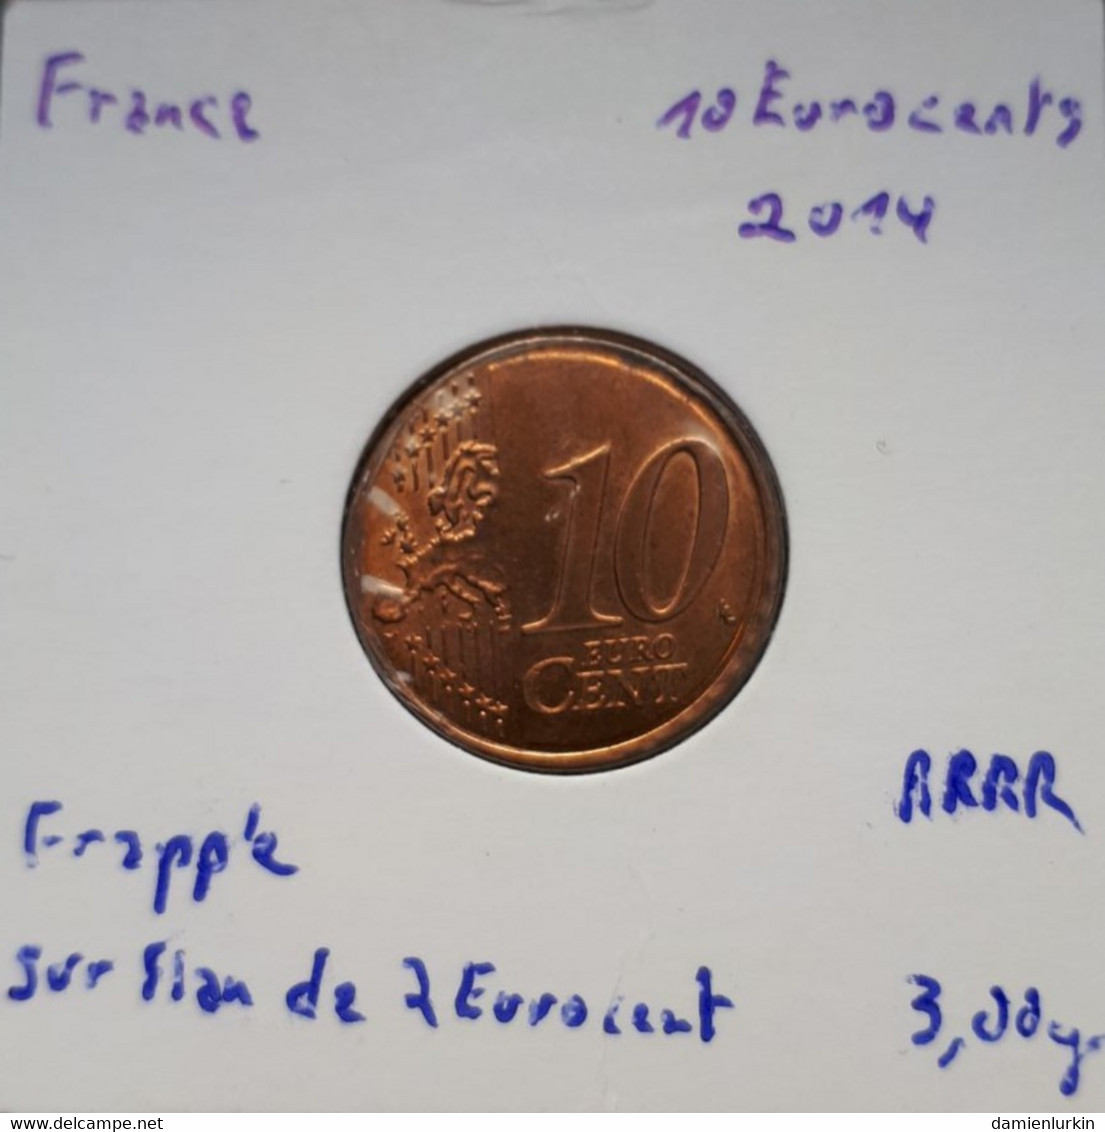 --PROMO 300€-- FRANCE EXCEPTIONNELLE 10 EURO CENT 2014 FRAPPEE SUR FLAN CUIVRE NON METALLIQUE !!!!! --LIRE DESCRIPTIF-- - Varietà E Curiosità